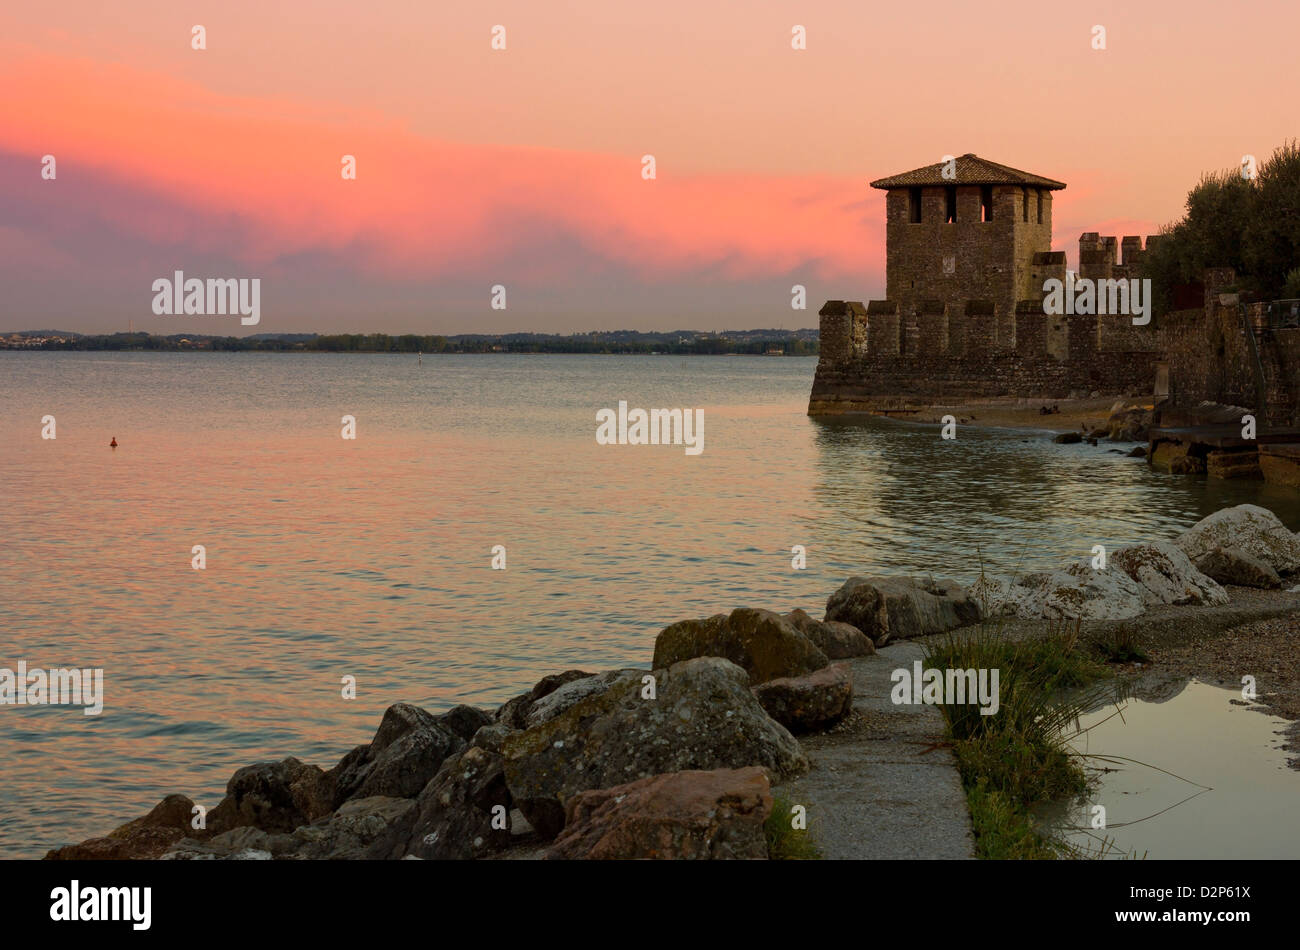 Lago di Garda vista in Sirmione, Italia con caldo tramonto rosso e la torre del castello scaligero nella distanza. Foto Stock